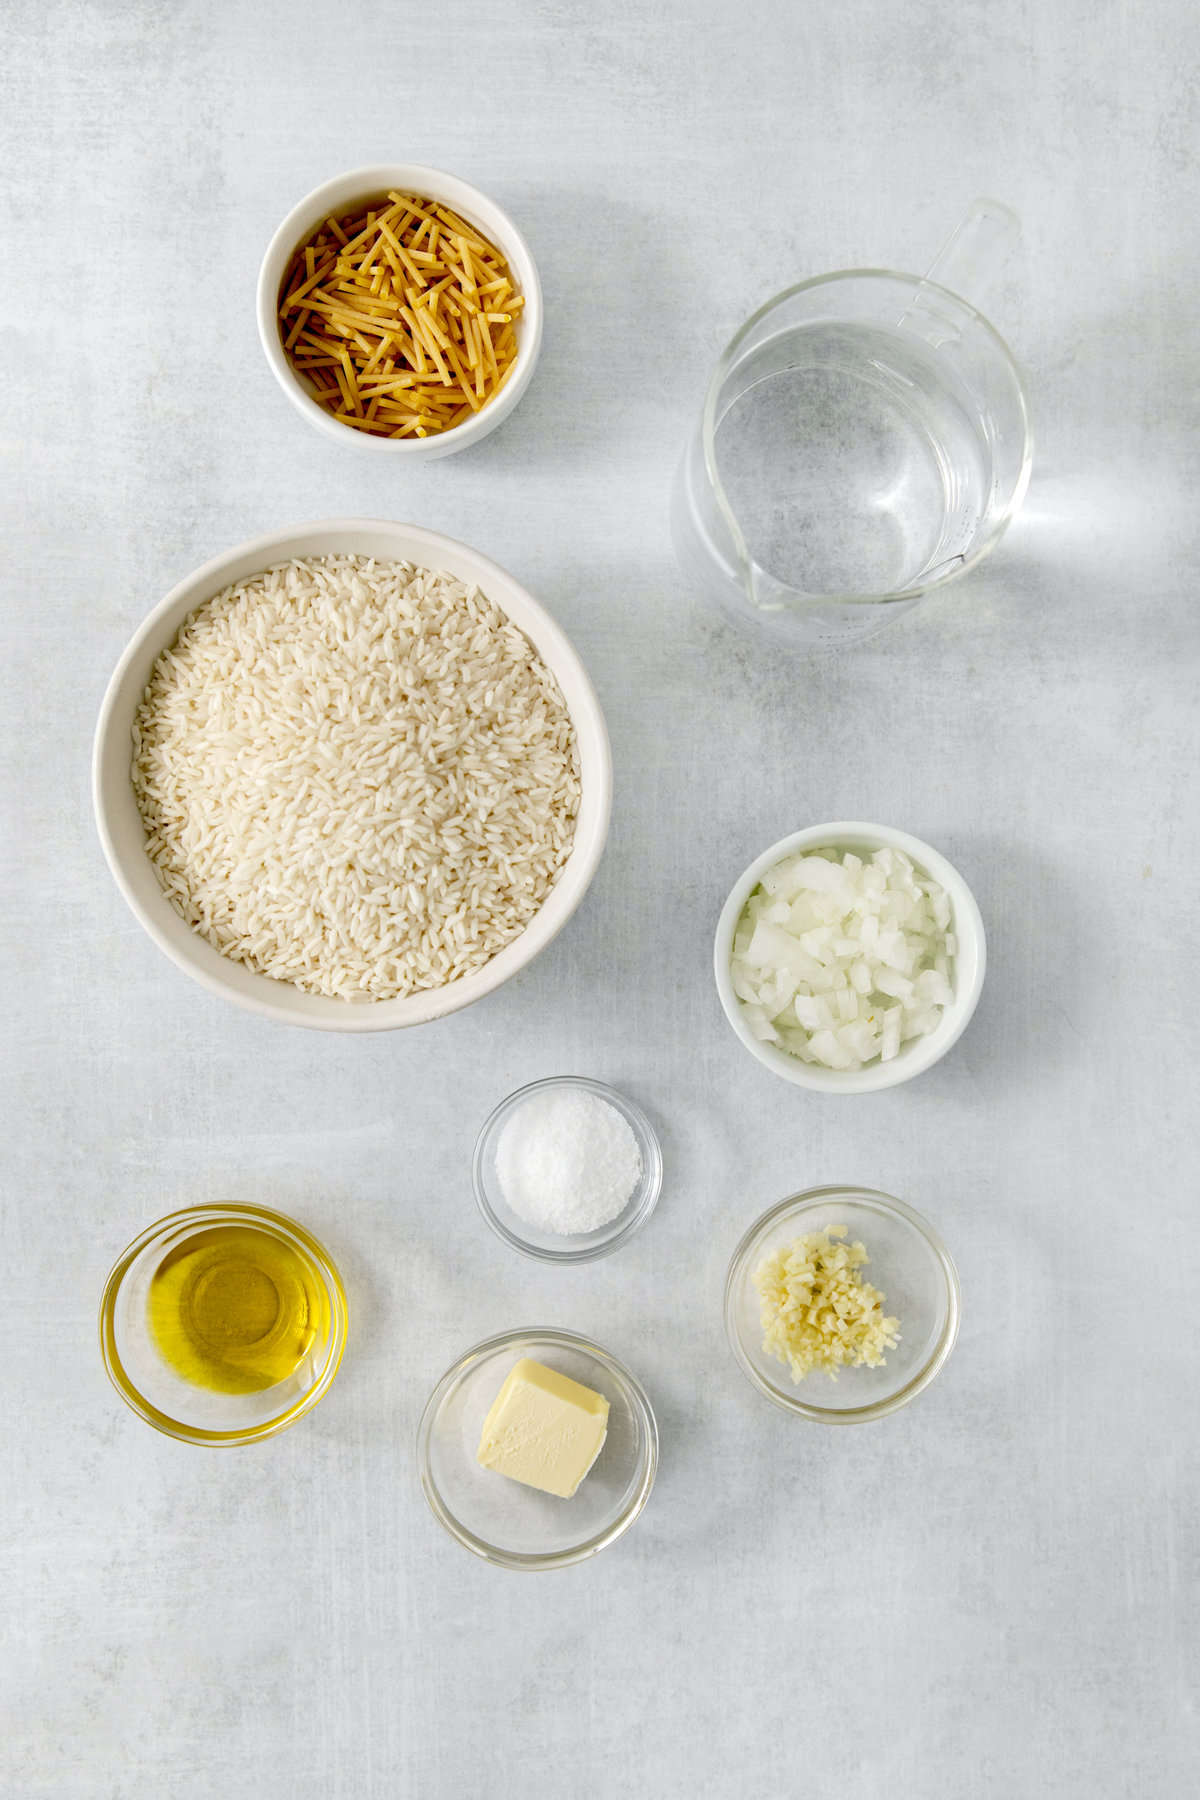 składniki ryżu pilaw w oddzielnych naczyniach.